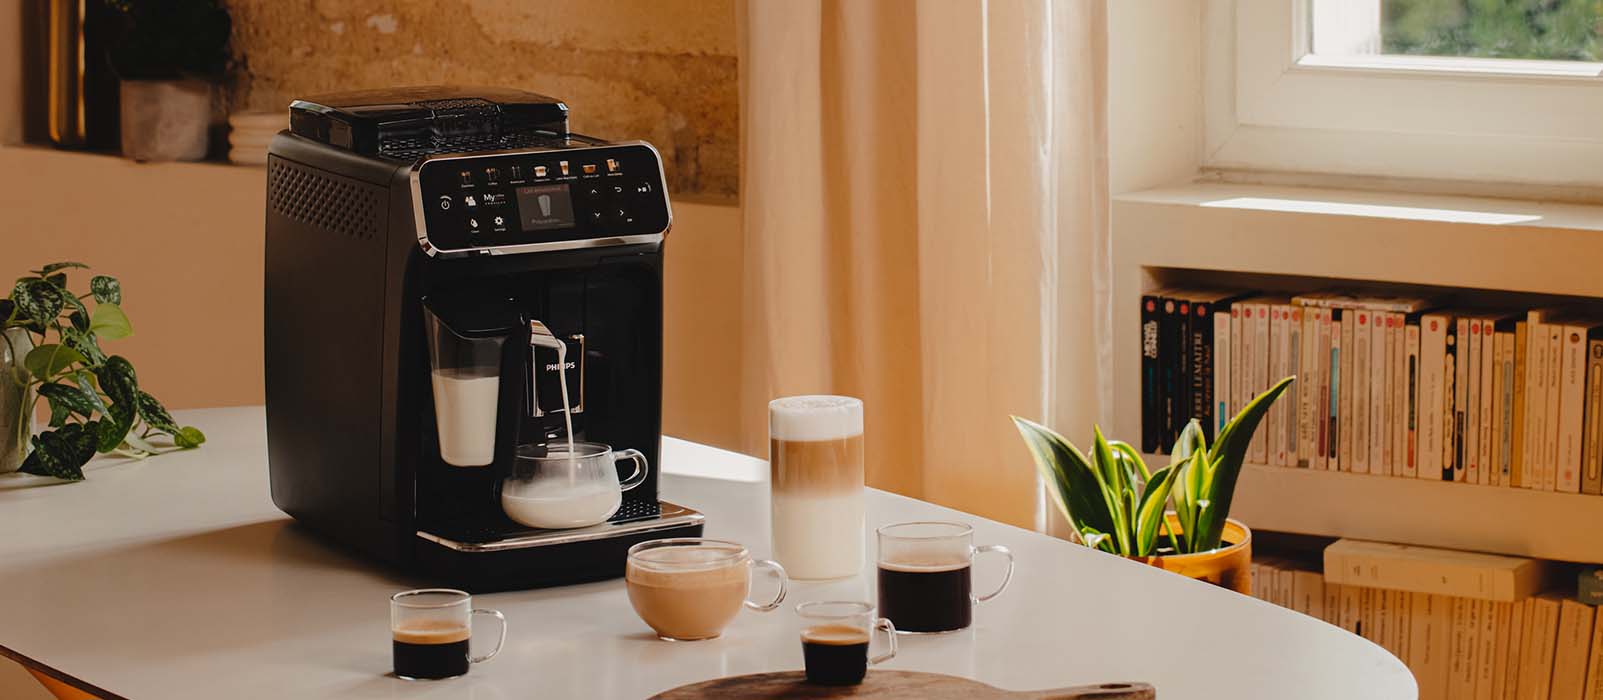 Quelle est la meilleure machine à café à grain Évolution ?